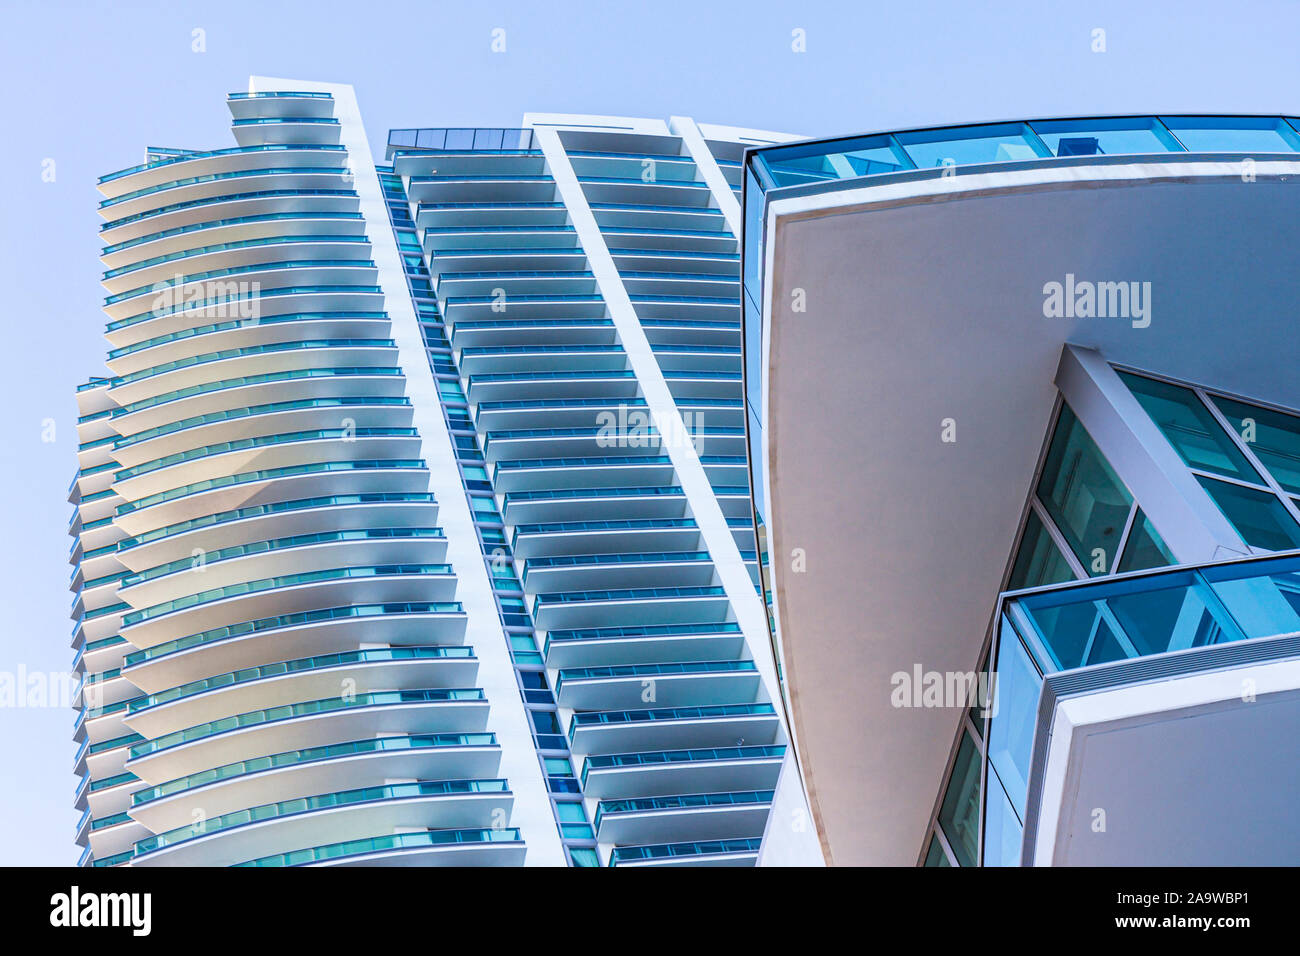 Miami Florida, Brickell District, Hochhaus Wolkenkratzer Gebäude Luxus Gebäude, Eigentumswohnung Wohnapartment Gebäude bauen Stockfoto